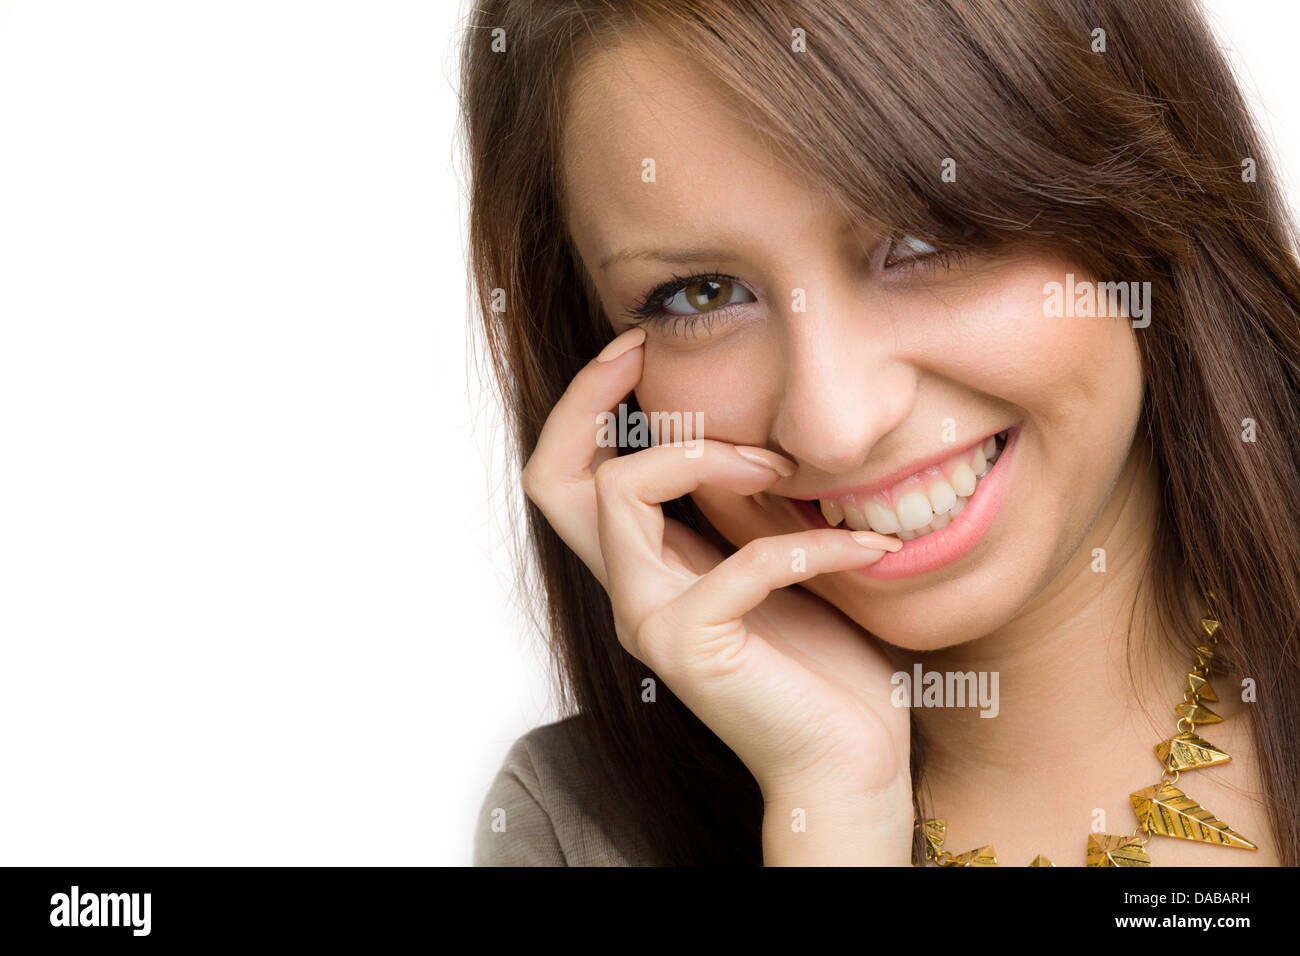 Sorriso toothy da una ragazza con la mano sulla bocca Foto Stock